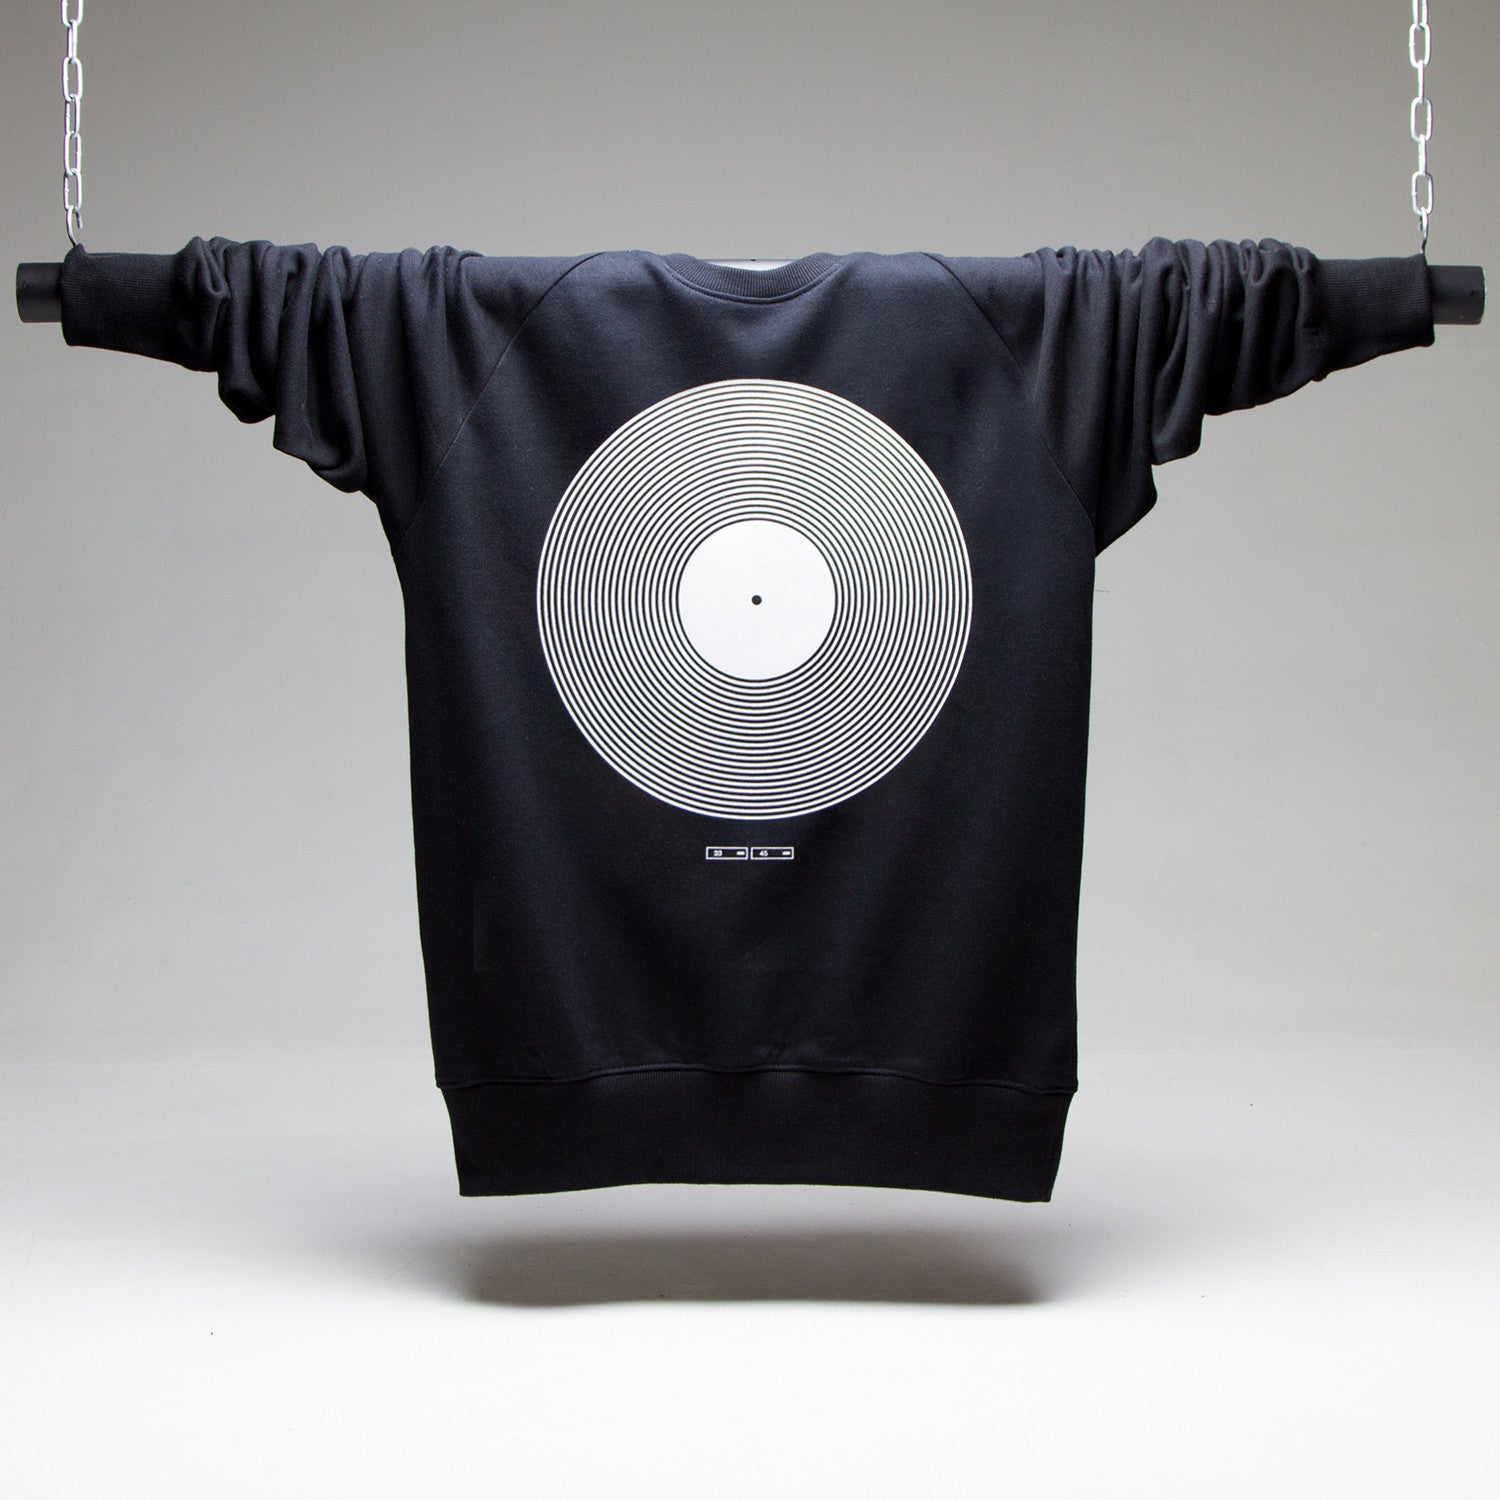 Vinyl - Sweatshirt - Black - Wasted Heroes